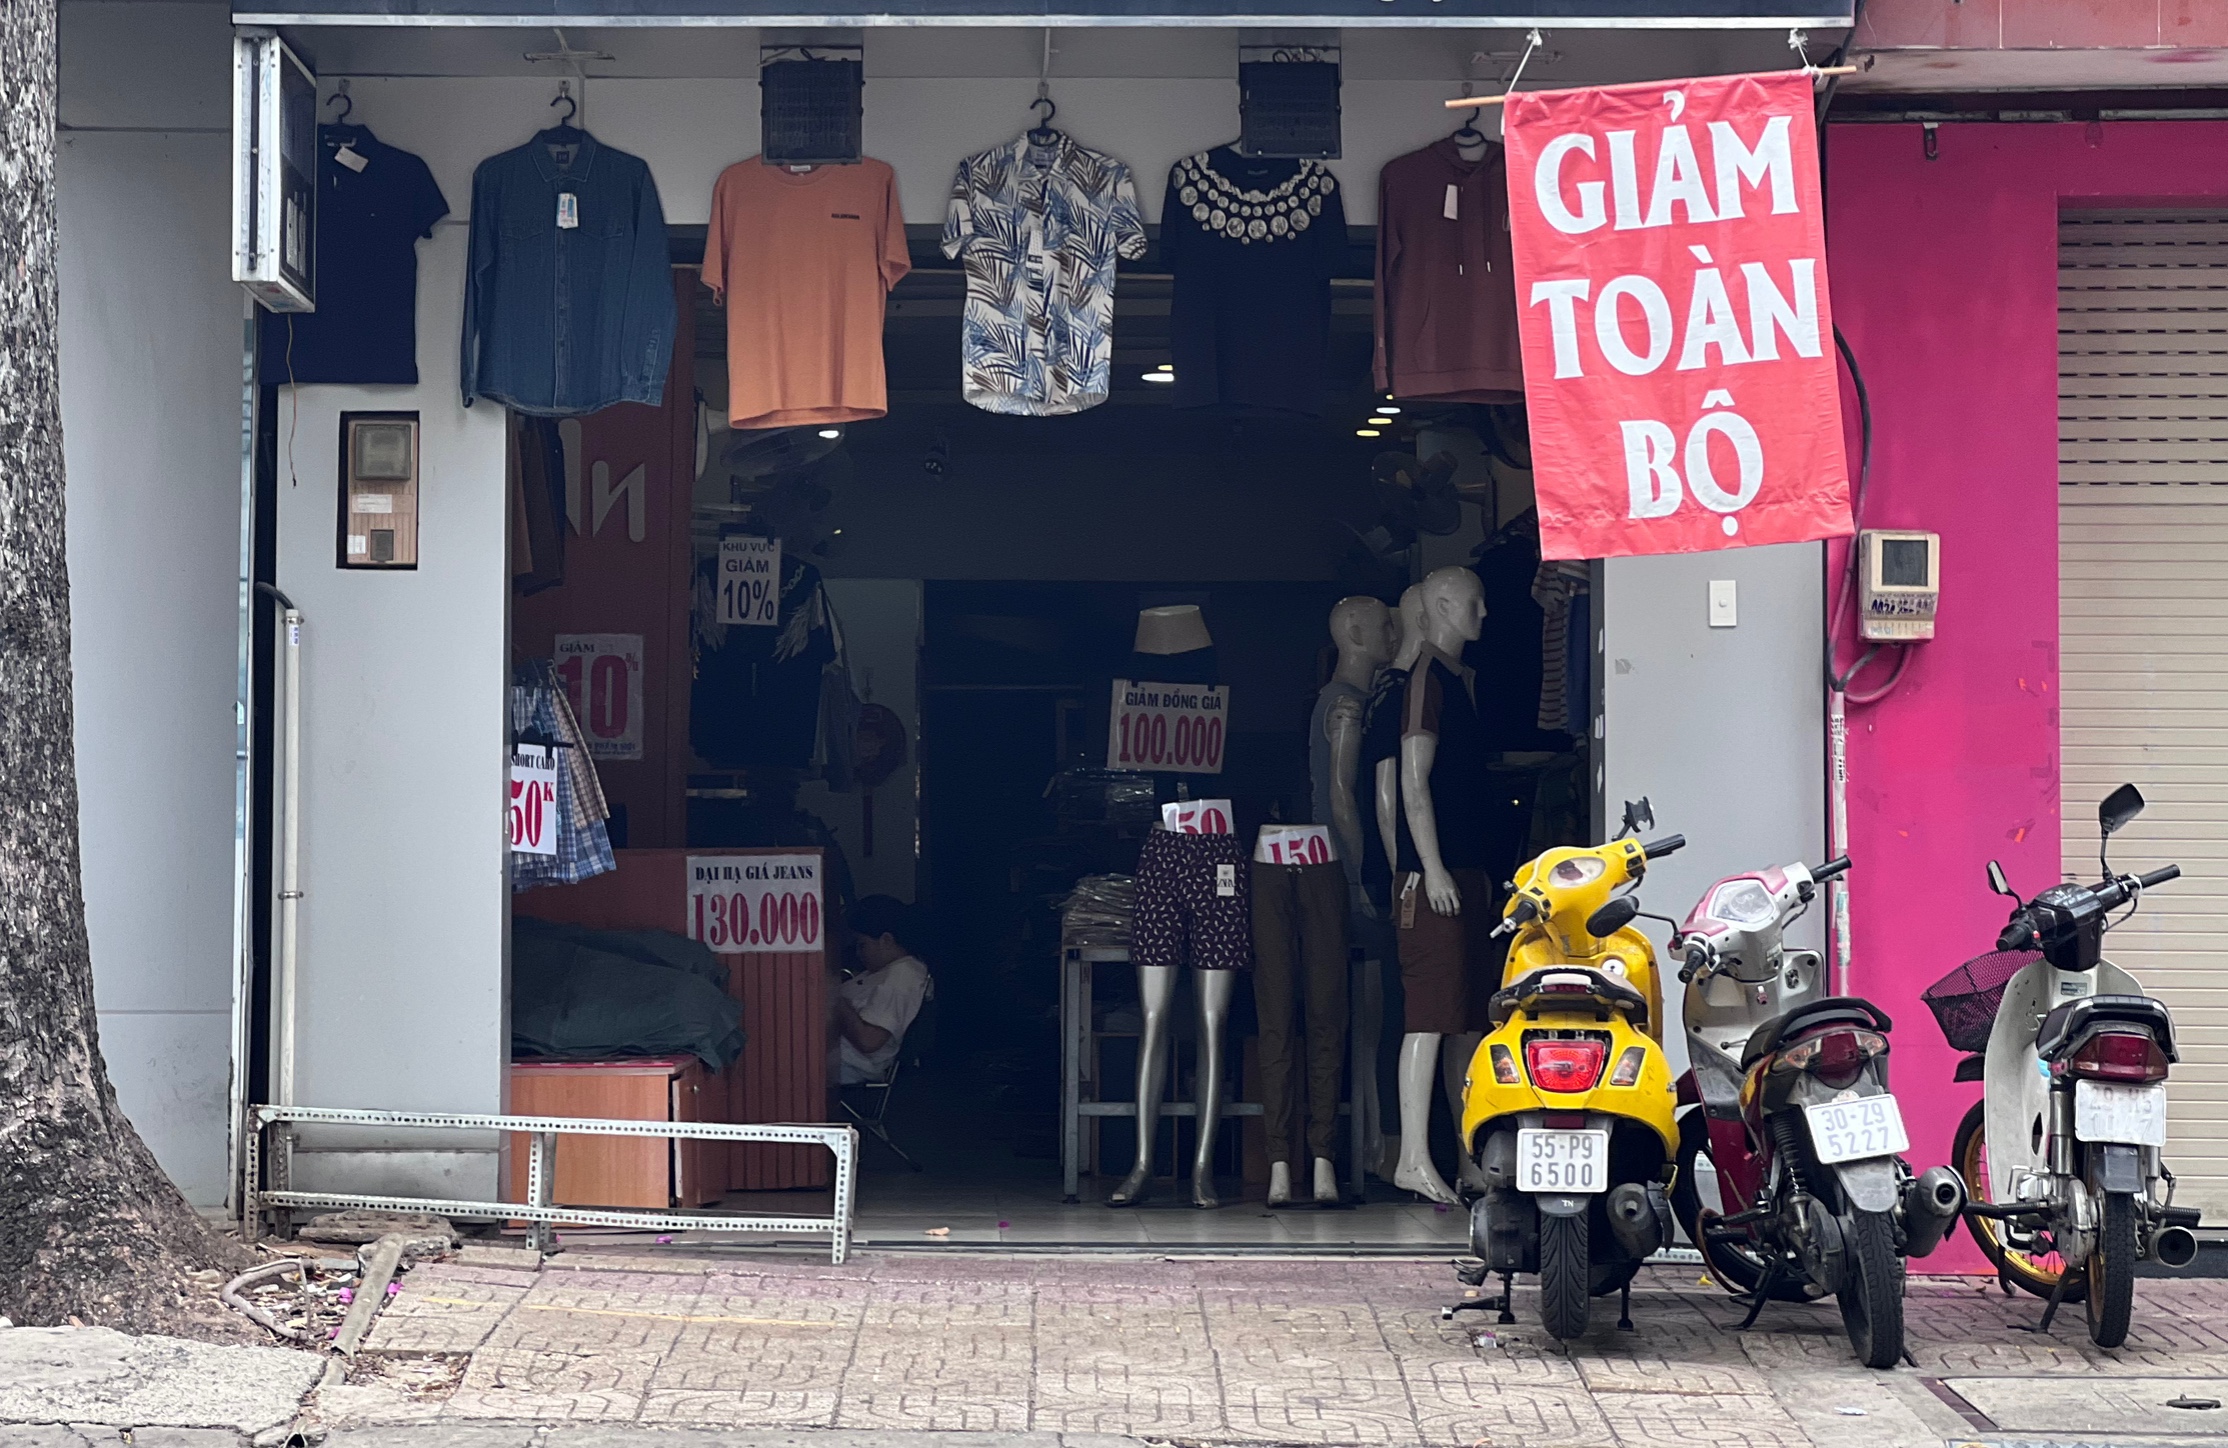 Nhiều cửa hàng trên đường Nguyễn Trãi đang trong giai đoạn xả hàng, tính đến chuyện trả mặt bằng sau thời gian dài gồng lỗ